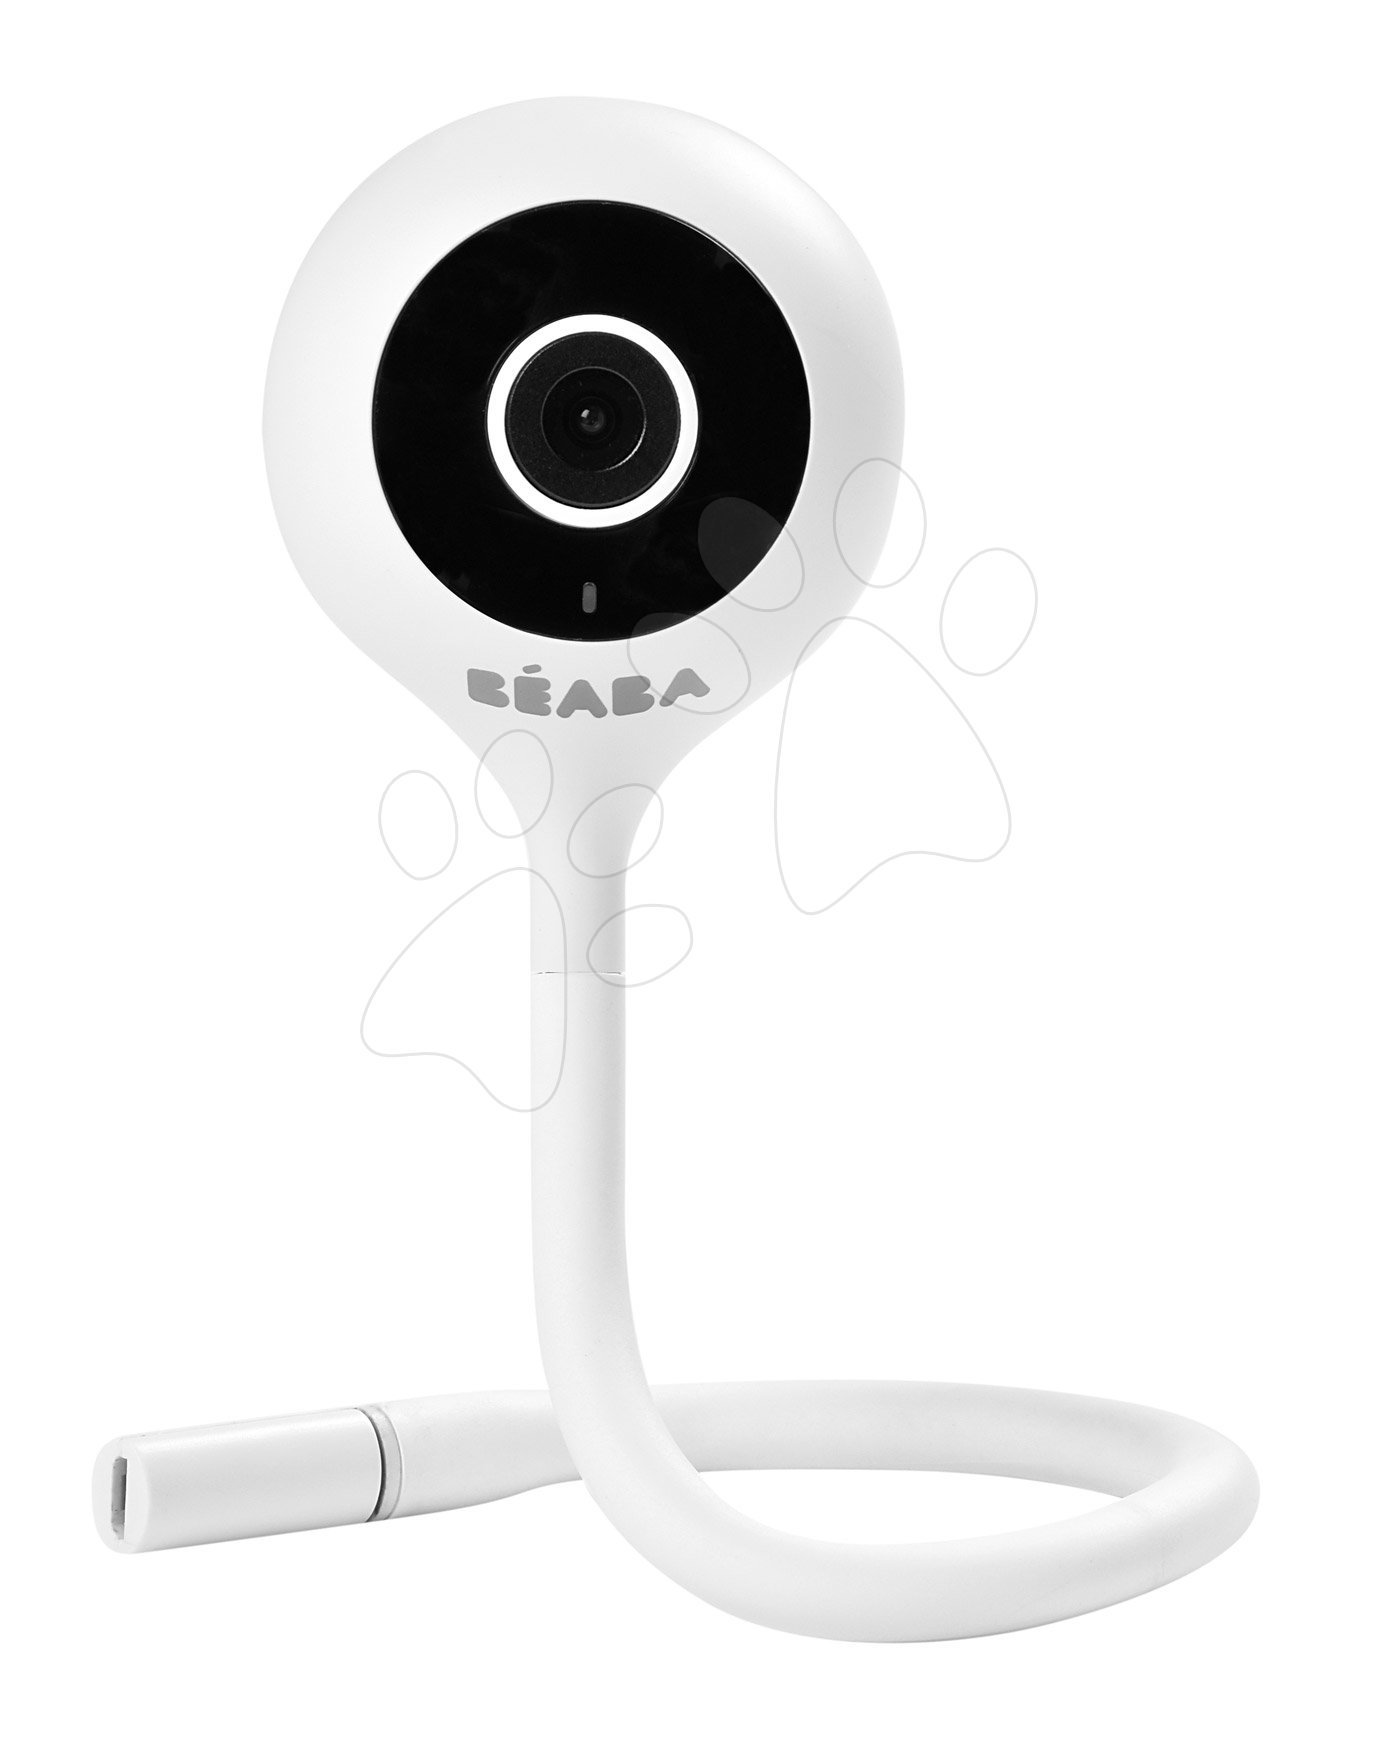 Elektronikus bébiőr Video Baby monitor ZEN connect Beaba mobillal összeköthető (Android és IOS) infra éjjellátóval